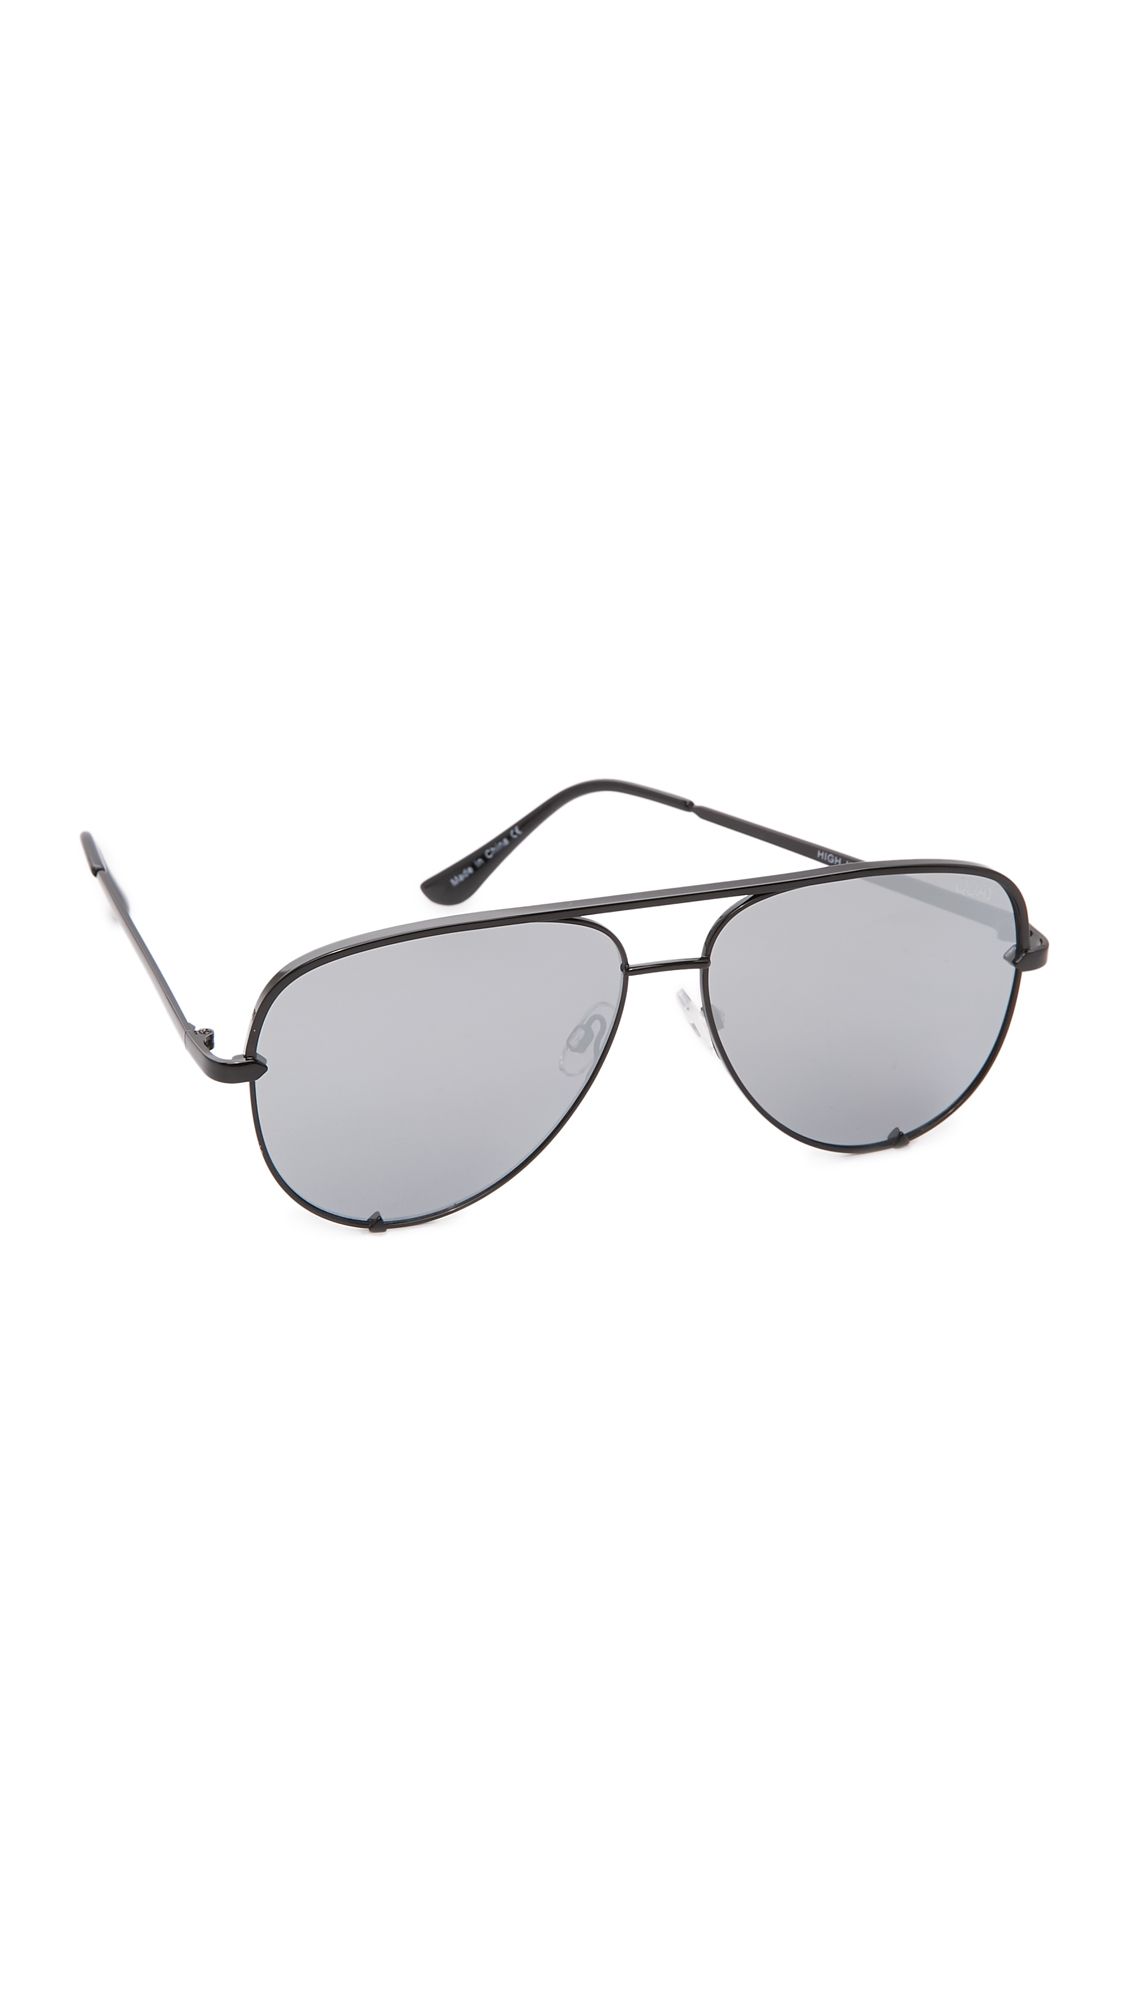 Quay Quay x Desi Perkins High Key Sunglasses | Shopbop